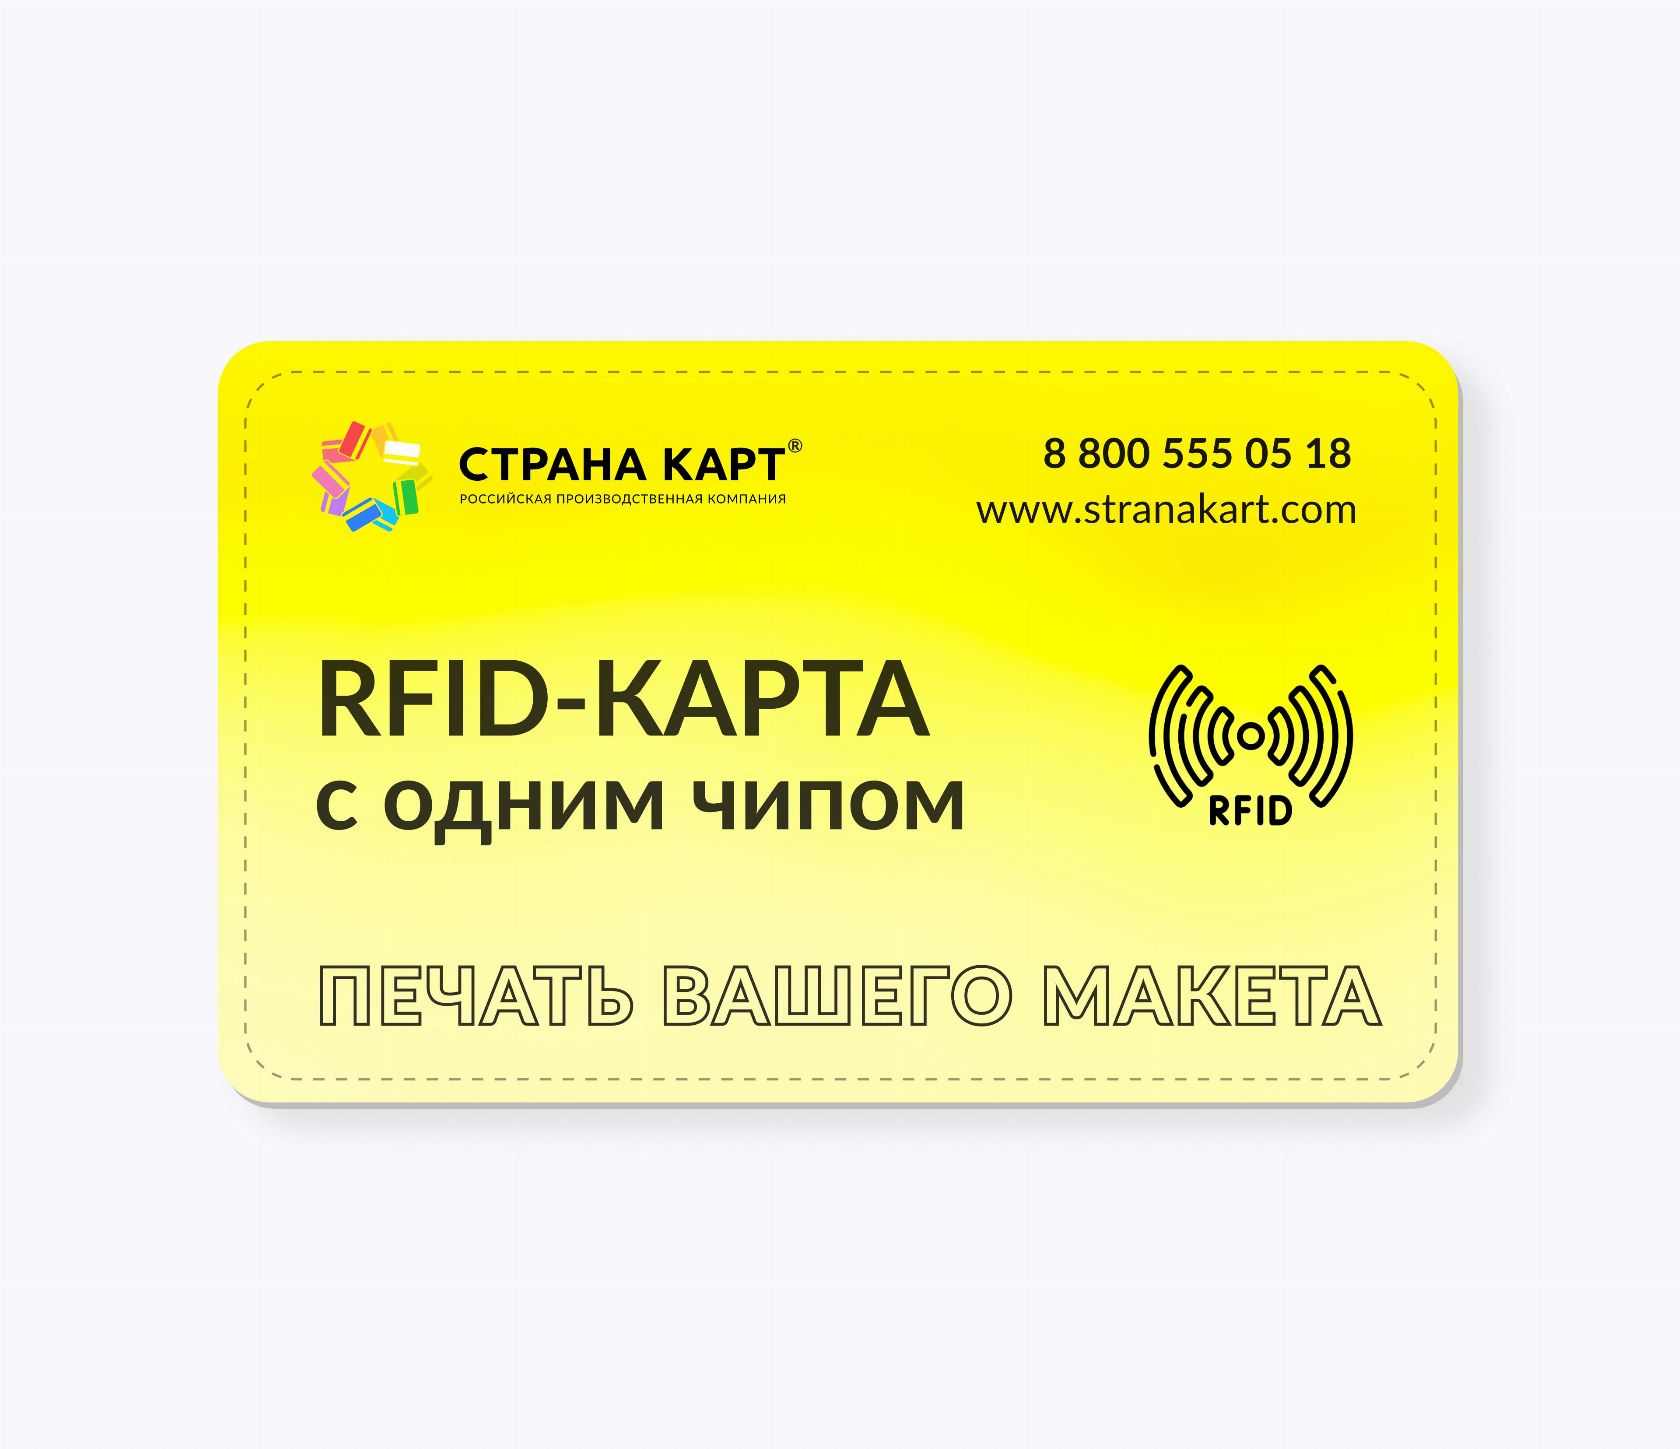 RFID-карты с чипом SMARTTAG® 1k 4 byte nUID печать вашего макета RFID-карты с чипом SMARTTAG® 1k 4 byte nUID